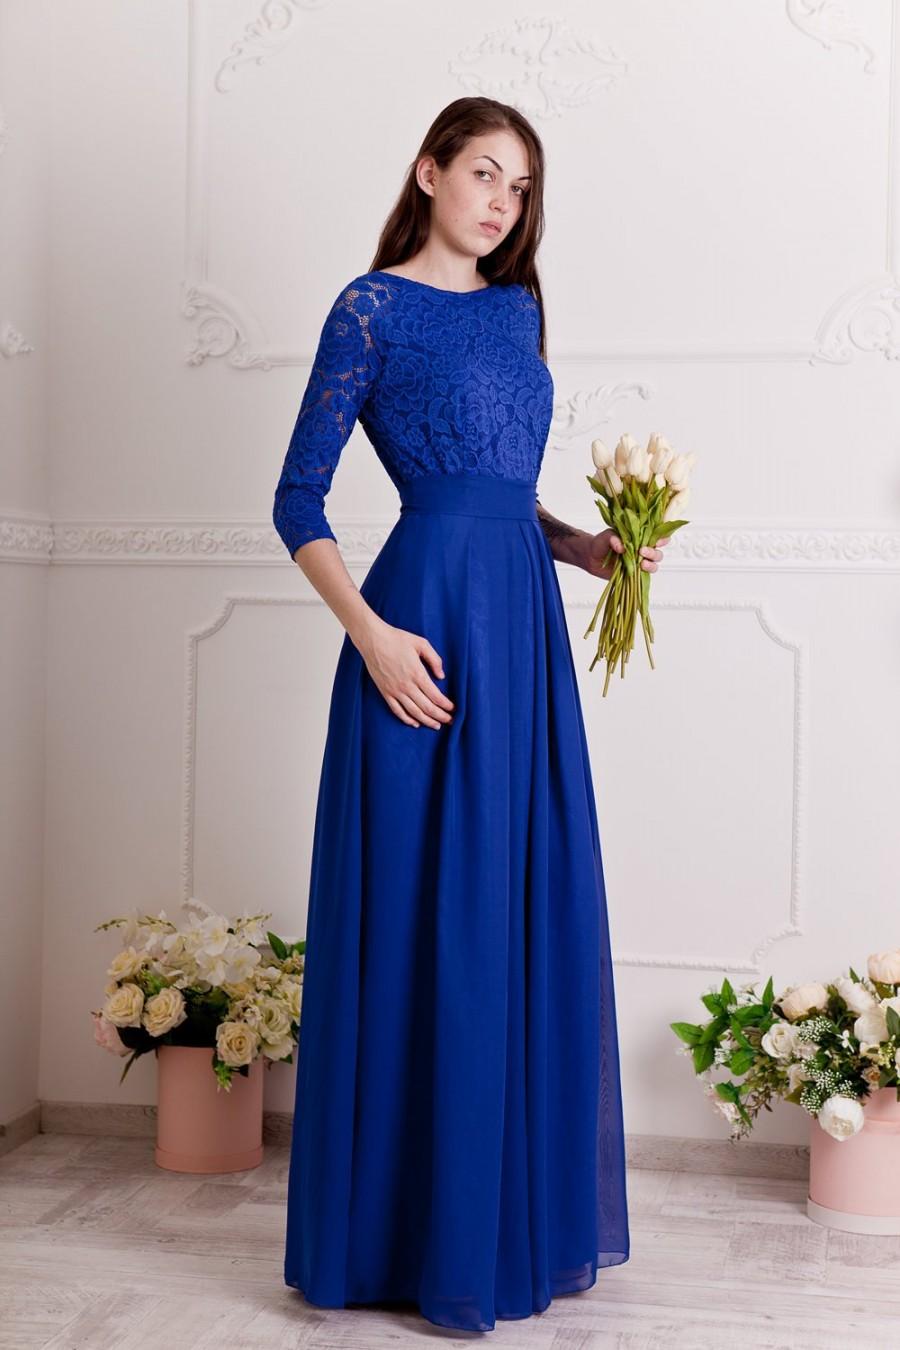 زفاف - Cobalt blue bridesmaid dress long. Floral lace formal gown with sleeves. Modest evening dress plus size.Blue mother of the groom dress